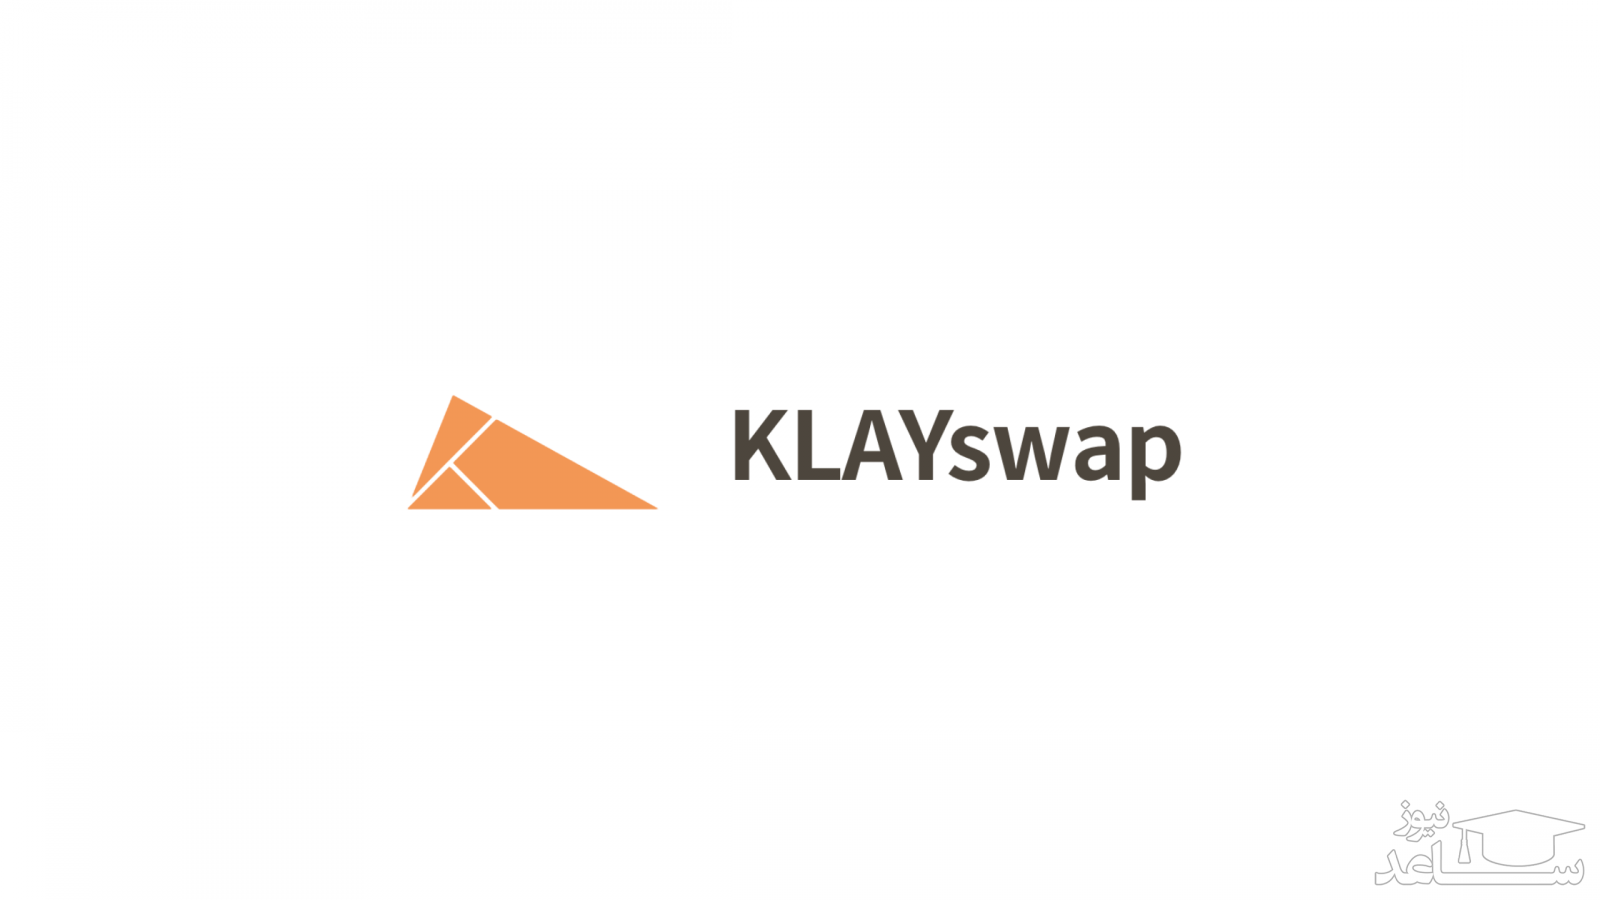 آشنایی با ارز دیجیتال کلای سواپ (KLAYswap)